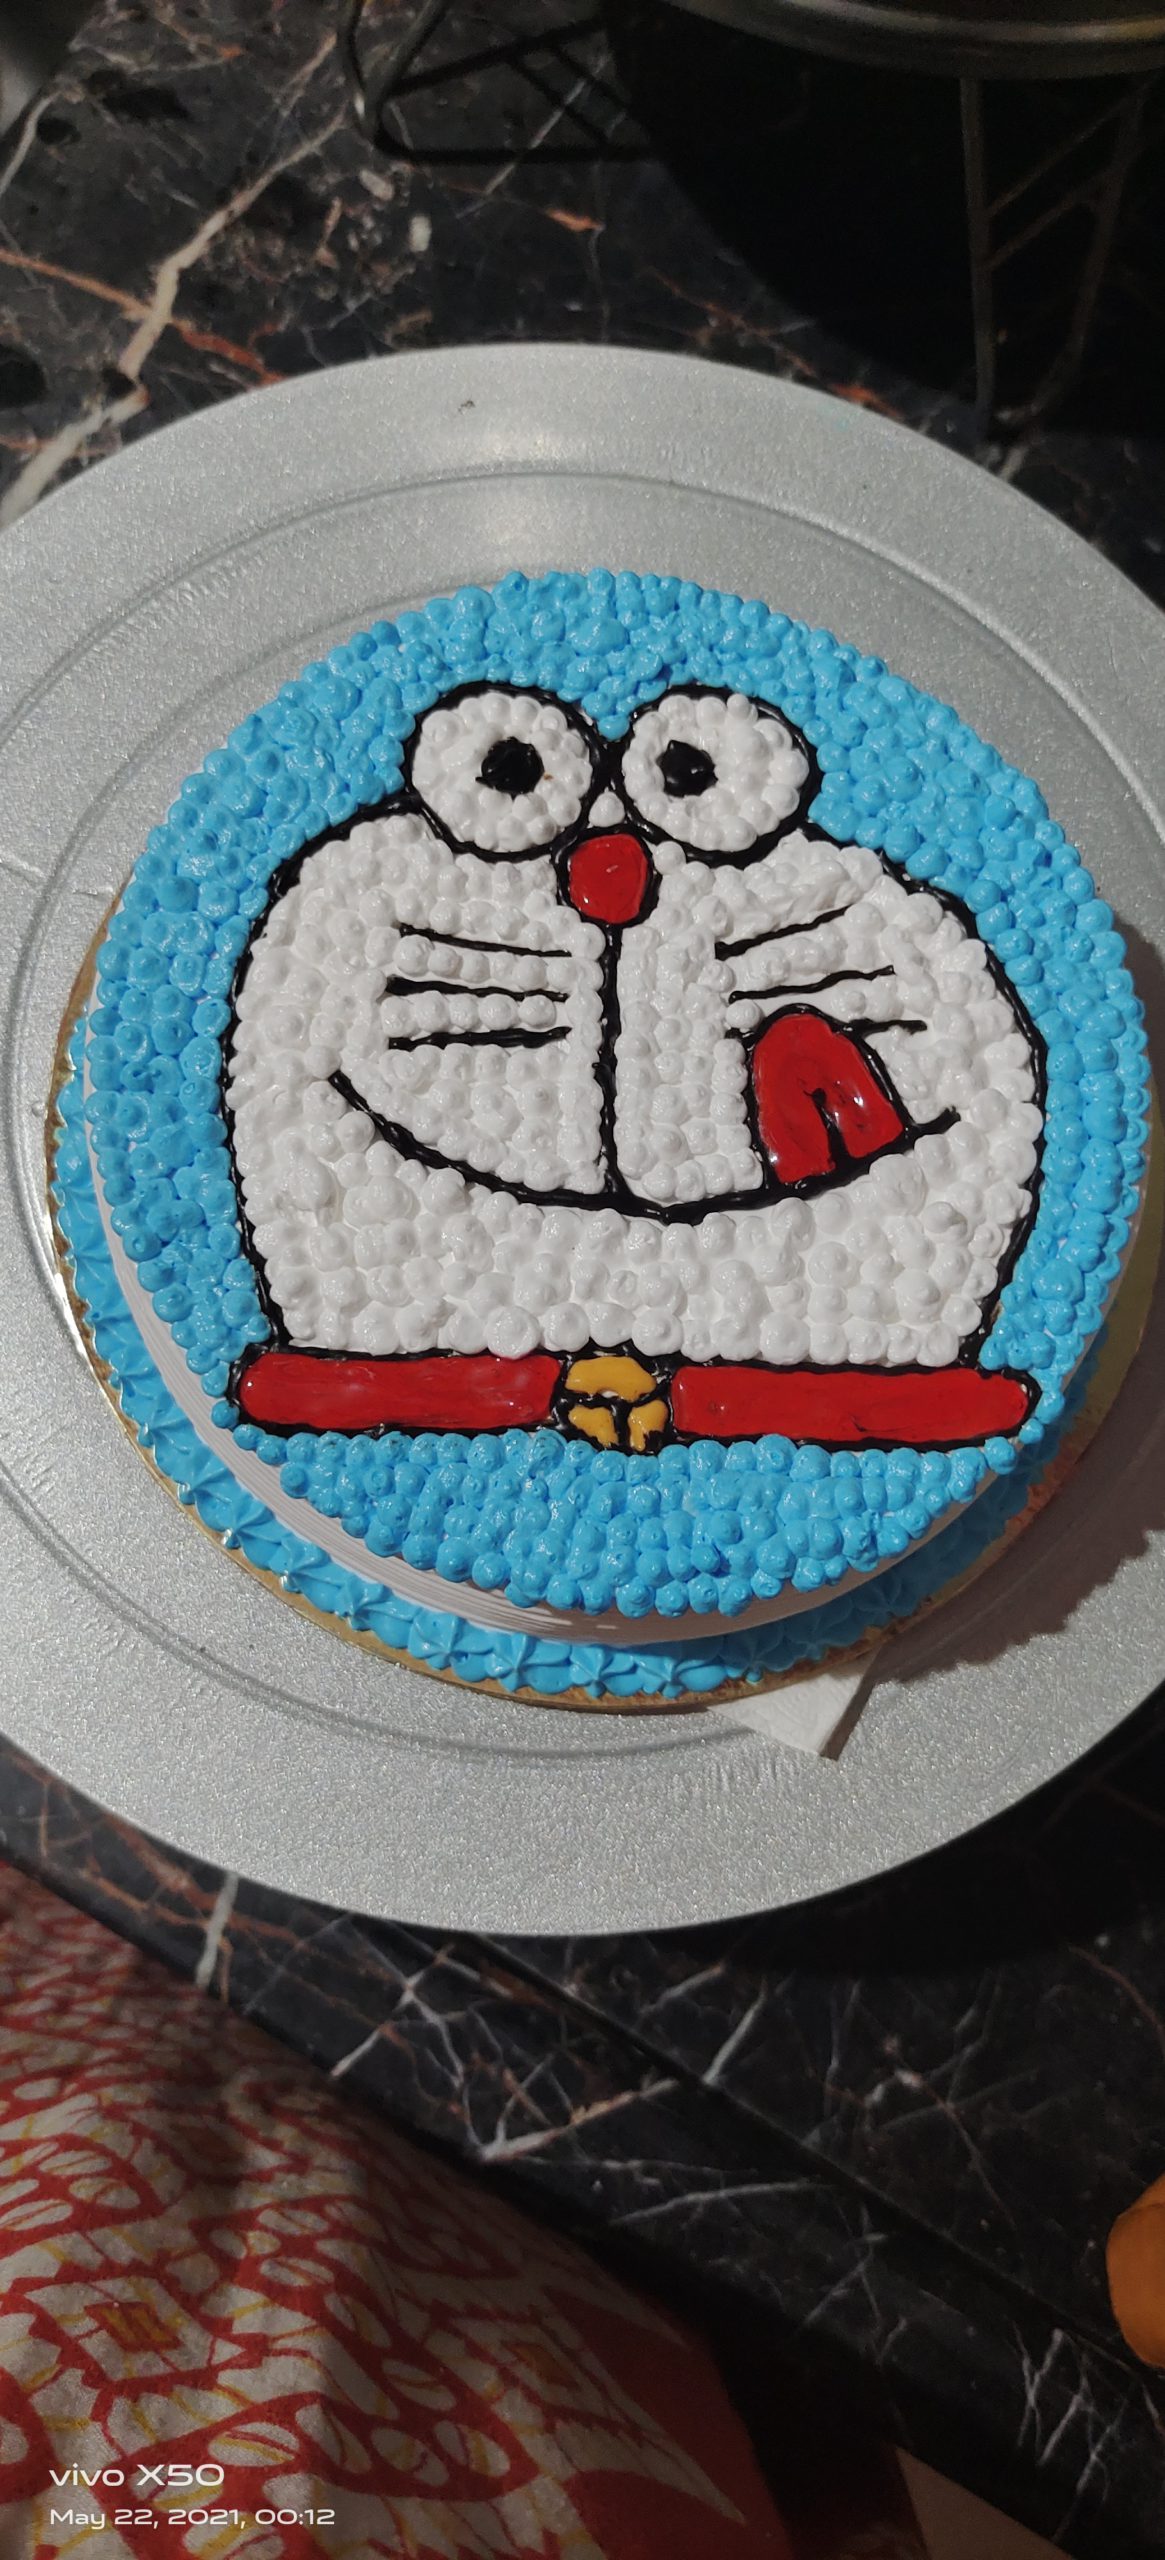 Best Doraemon Cake In Mumbai | Order Online